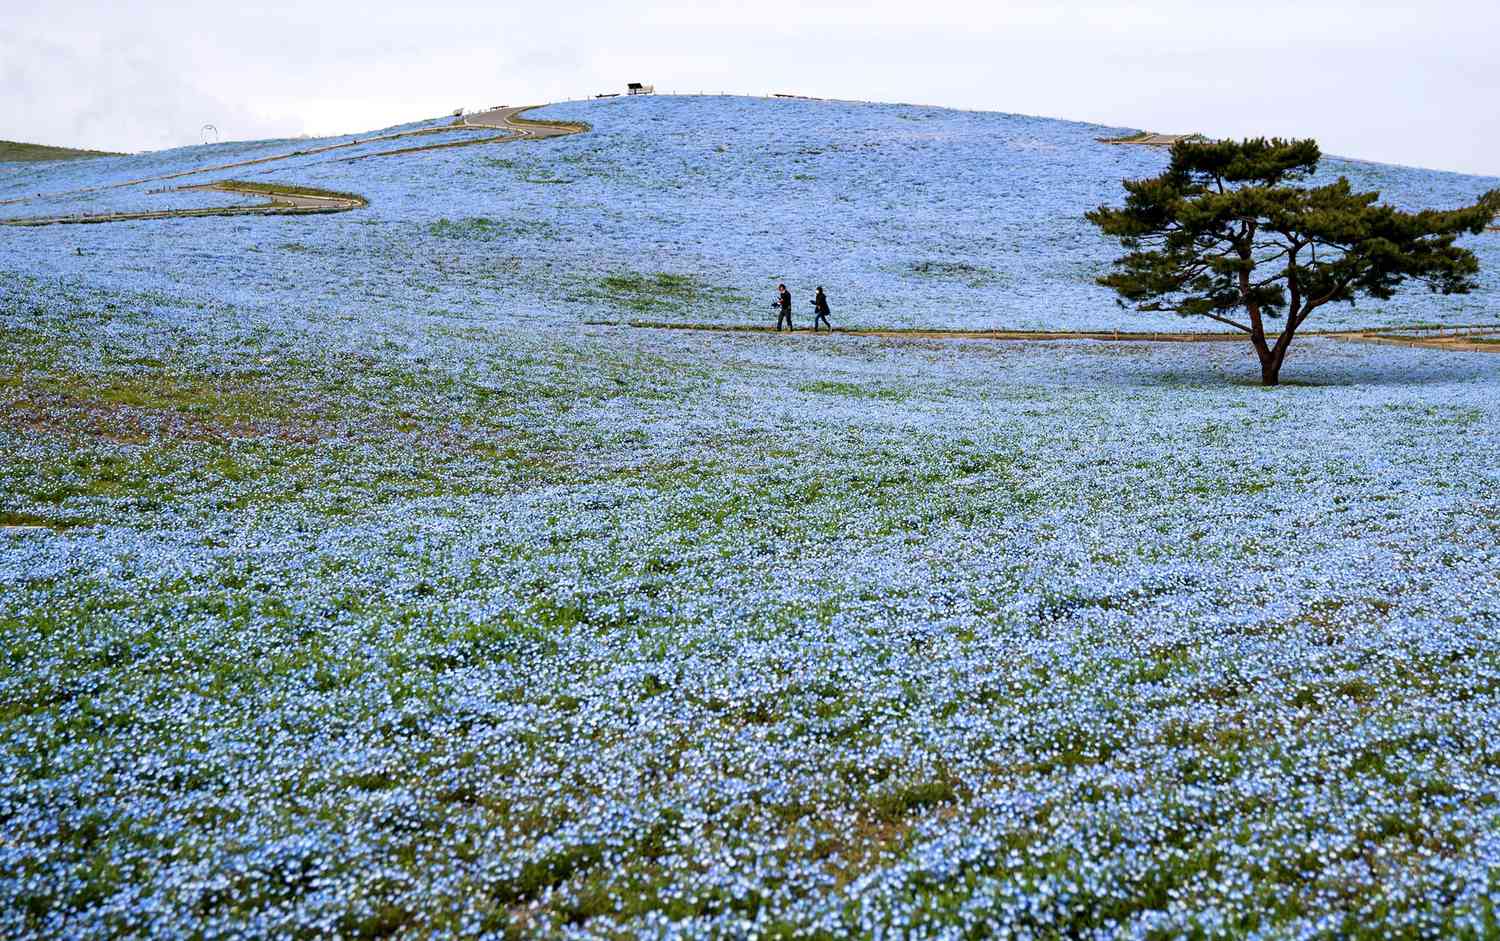 Field of Nemophila flowers in Japan with tree